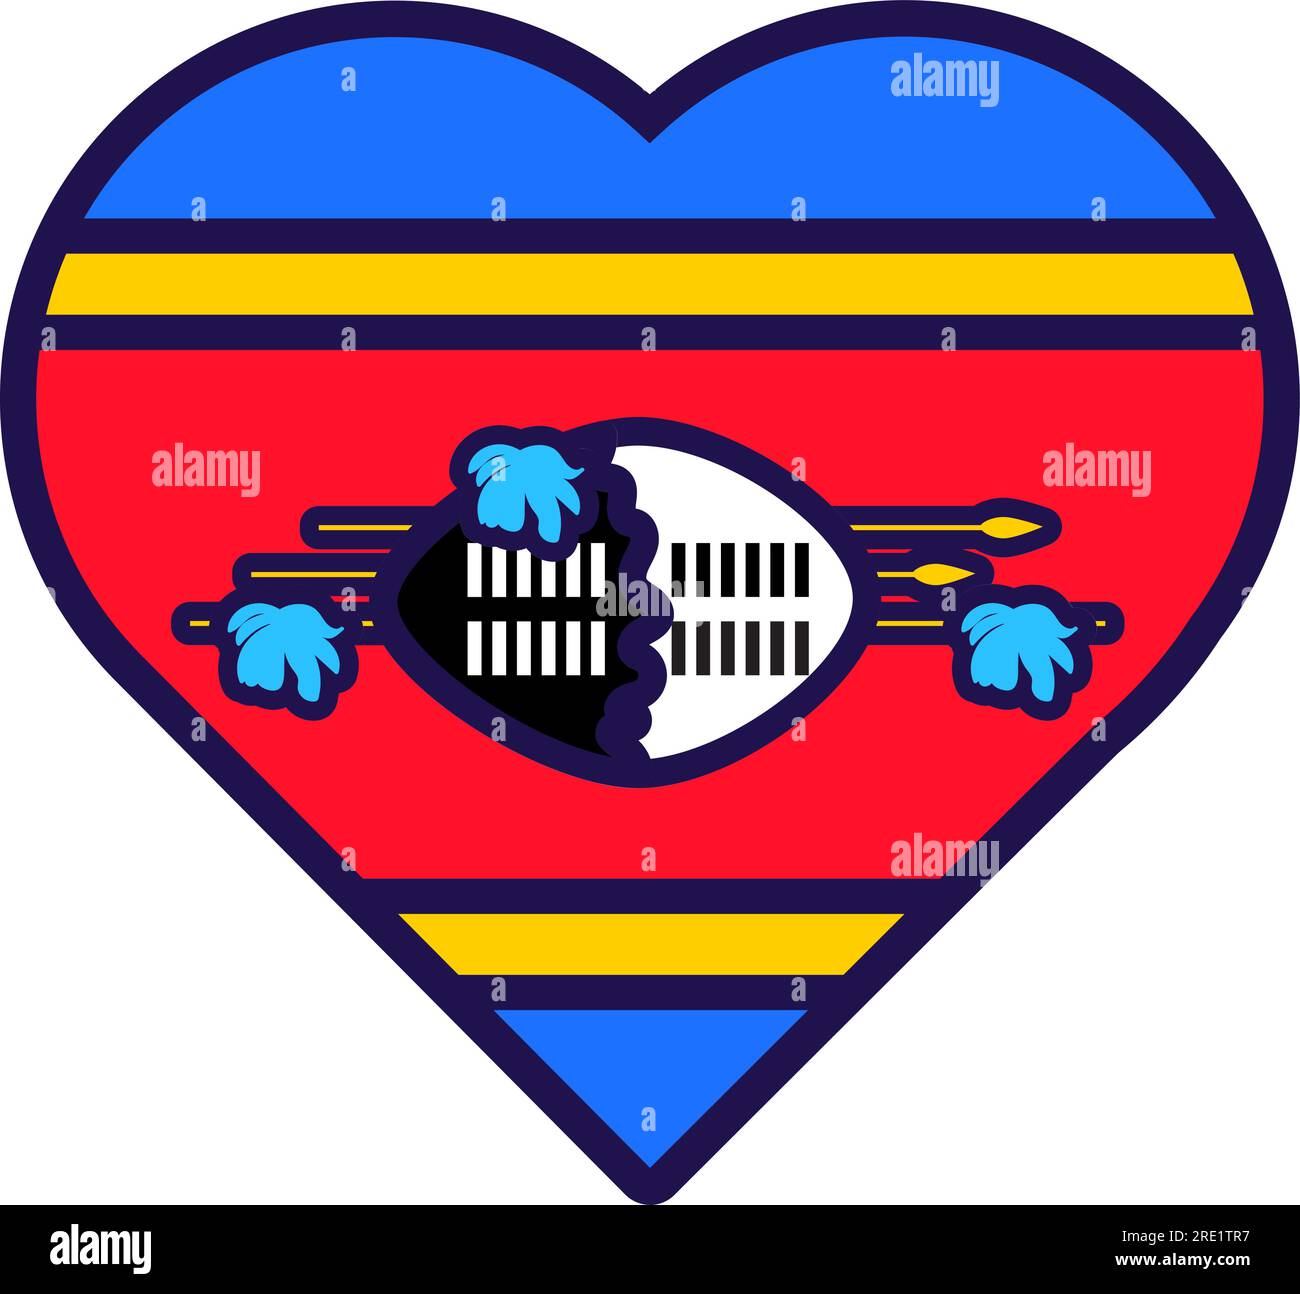 Patriot Heart in den Farben der nationalen Swasiland-Flagge. Festliches Element, Attribute des Unabhängigkeitstages von Swasiland. Cartoon-Vektorsymbol in den nationalen Farben von Stock Vektor